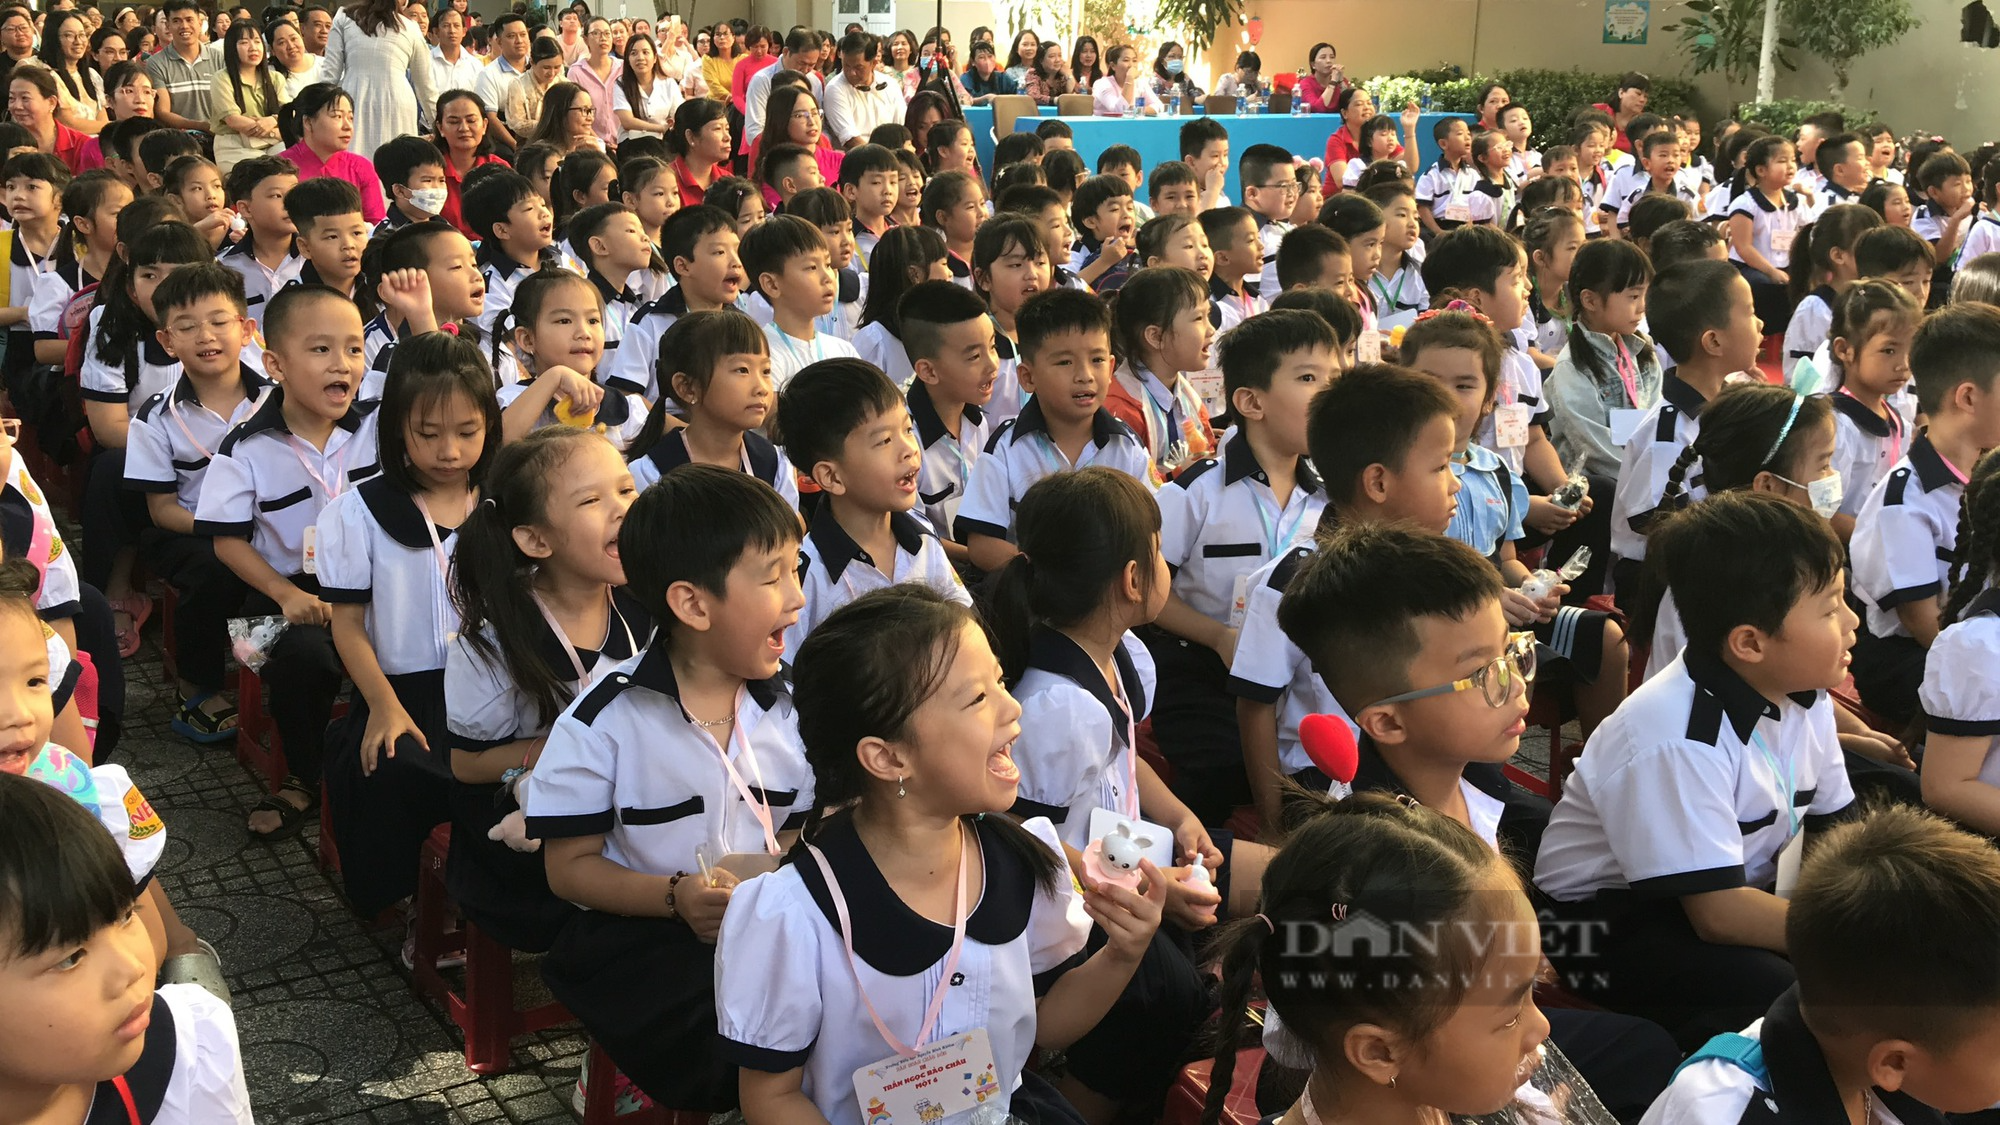 Bí thư Thành ủy Nguyễn Văn Nên đưa ra 4 yêu cầu với ngành giáo dục thành phố trước thềm năm học mới - Ảnh 1.